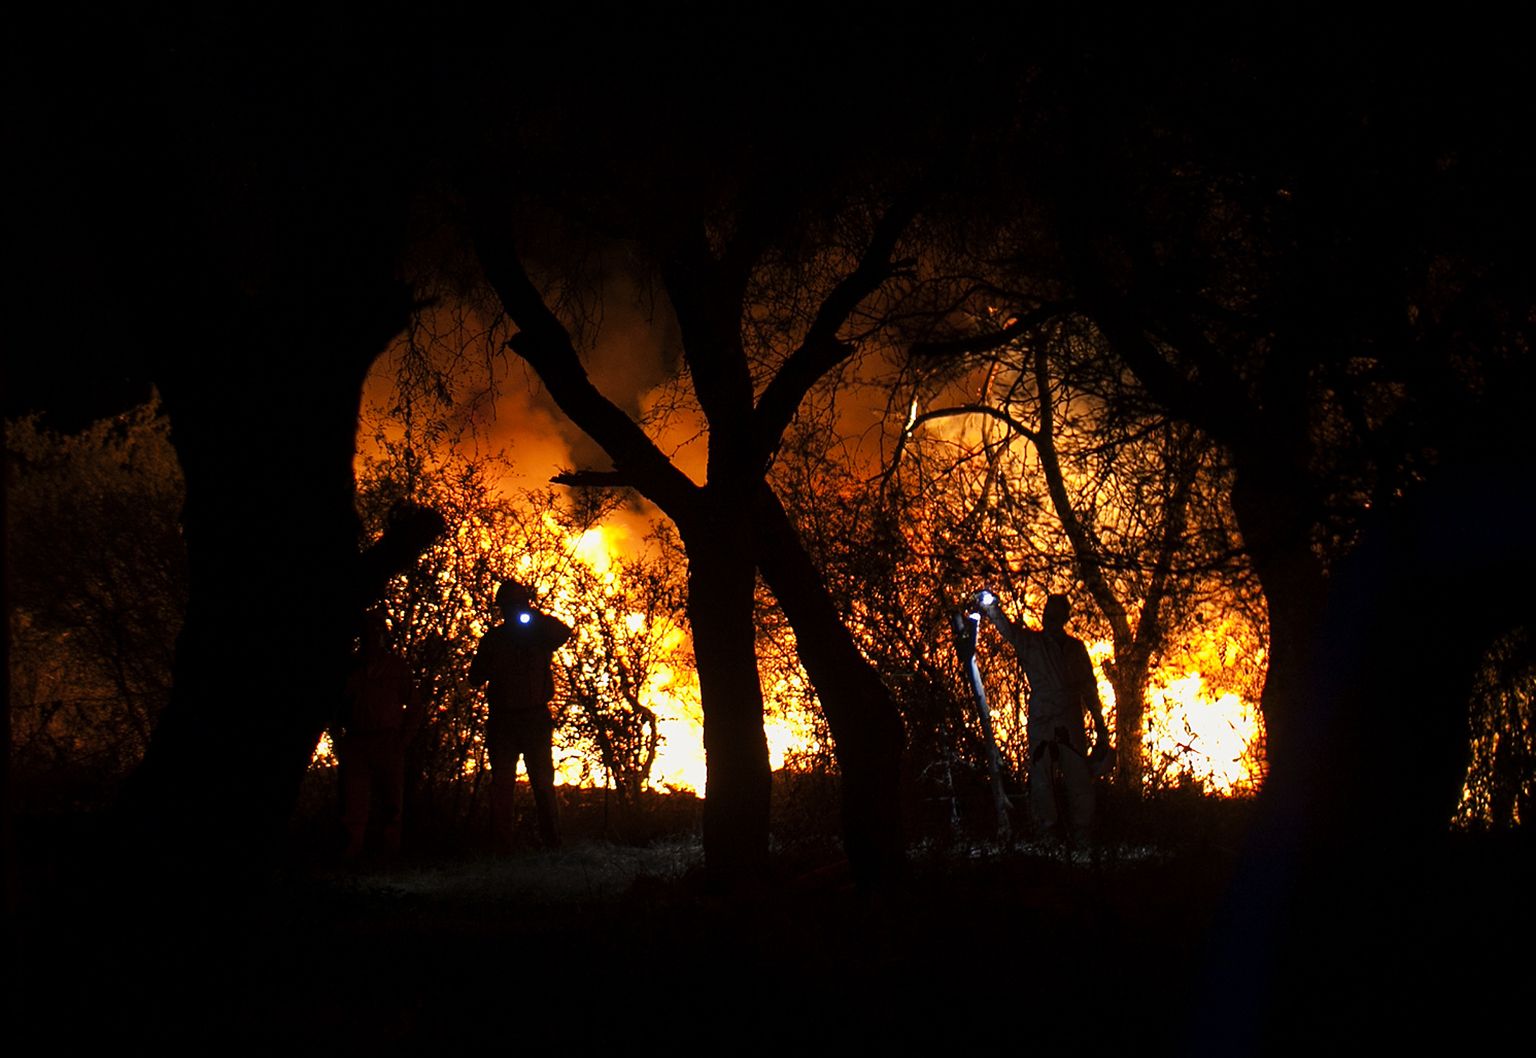 Mehhiko tuletõrjujad kustutamas Pemexi torujuhtmepõlengut, mis sai alguse kütusevargusest.